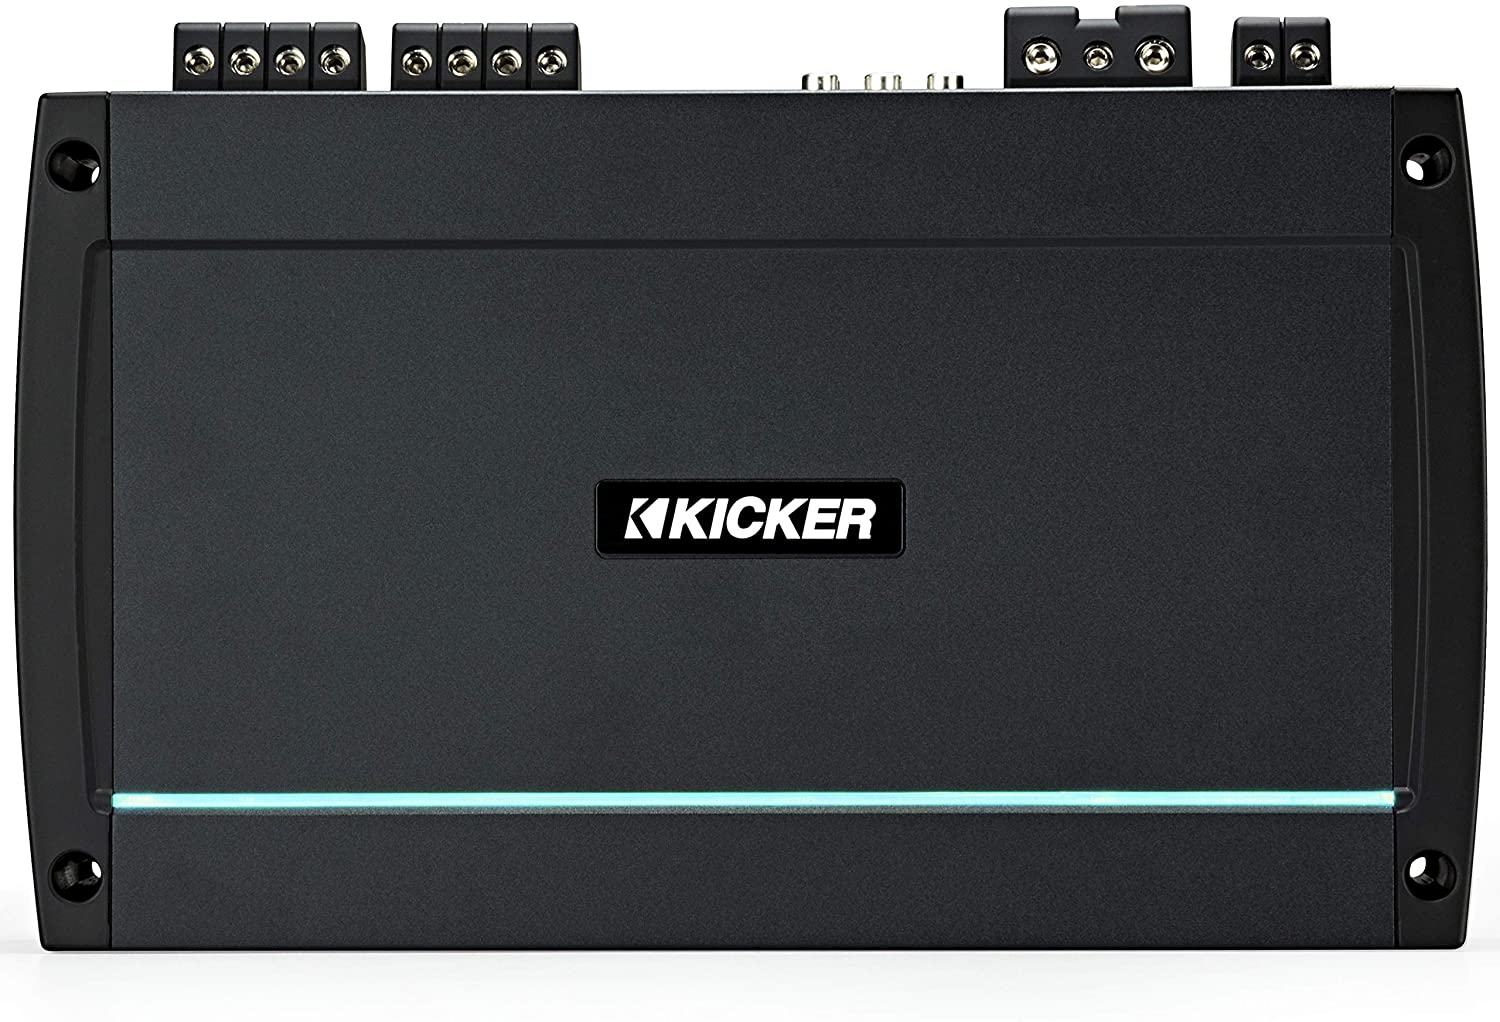 Kicker KXMA800.5 4x100-Watt Four-Channel Full-Range Class D Amplifier Best Marine Amplifier for the Money